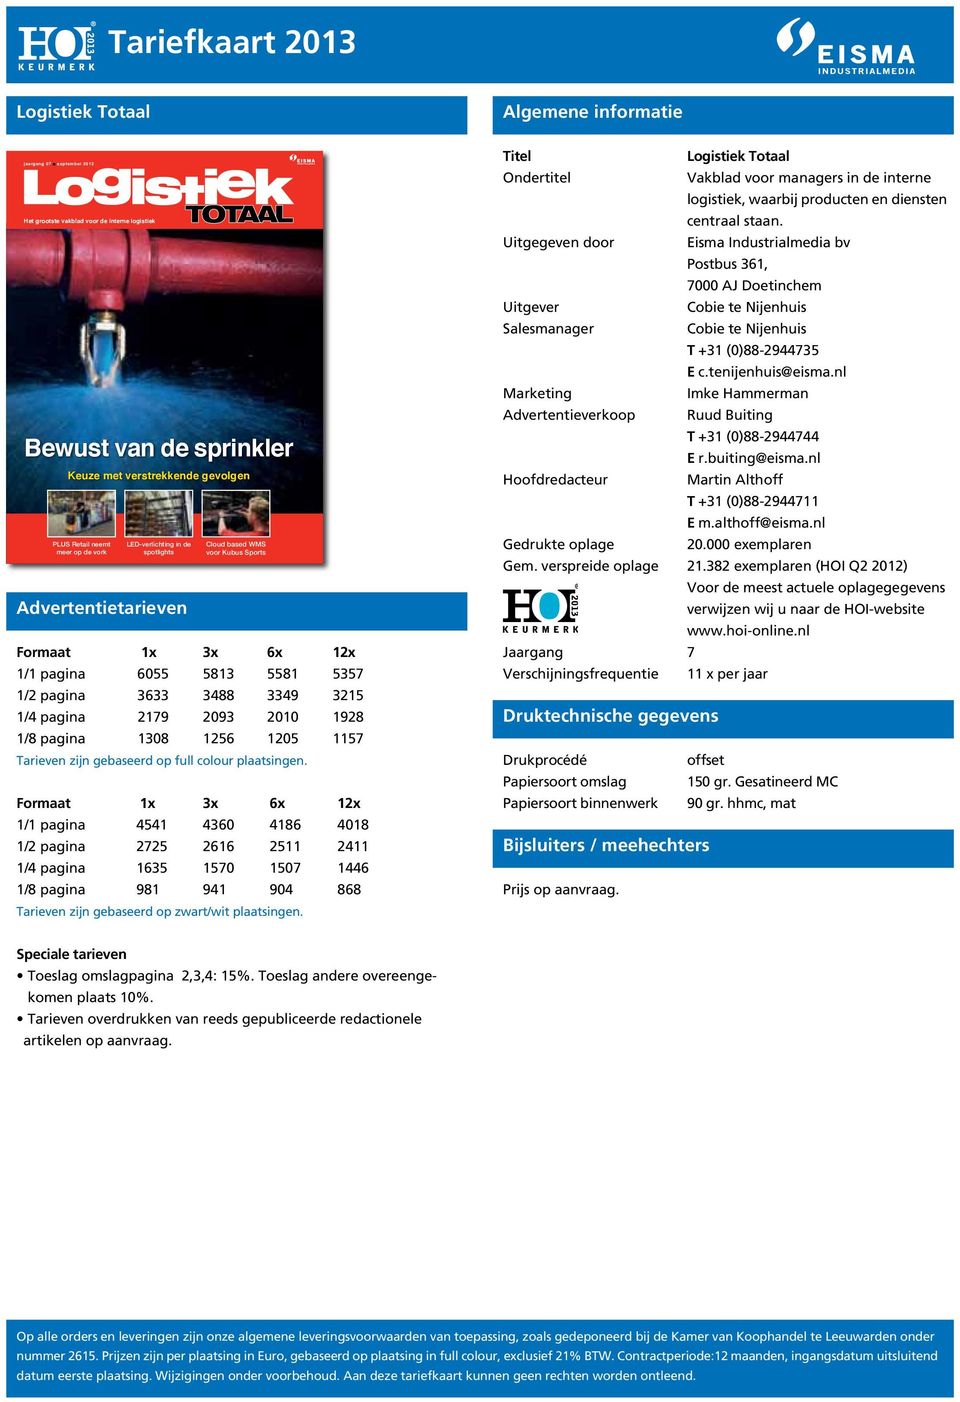 LED-verlichting in de Cloud based WMS meer op de vork spotlights voor Kubus Sports Advertentietarieven Formaat 1x 3x 6x 12x 1/1 pagina 6055 5813 5581 5357 1/2 pagina 3633 3488 3349 3215 1/4 pagina